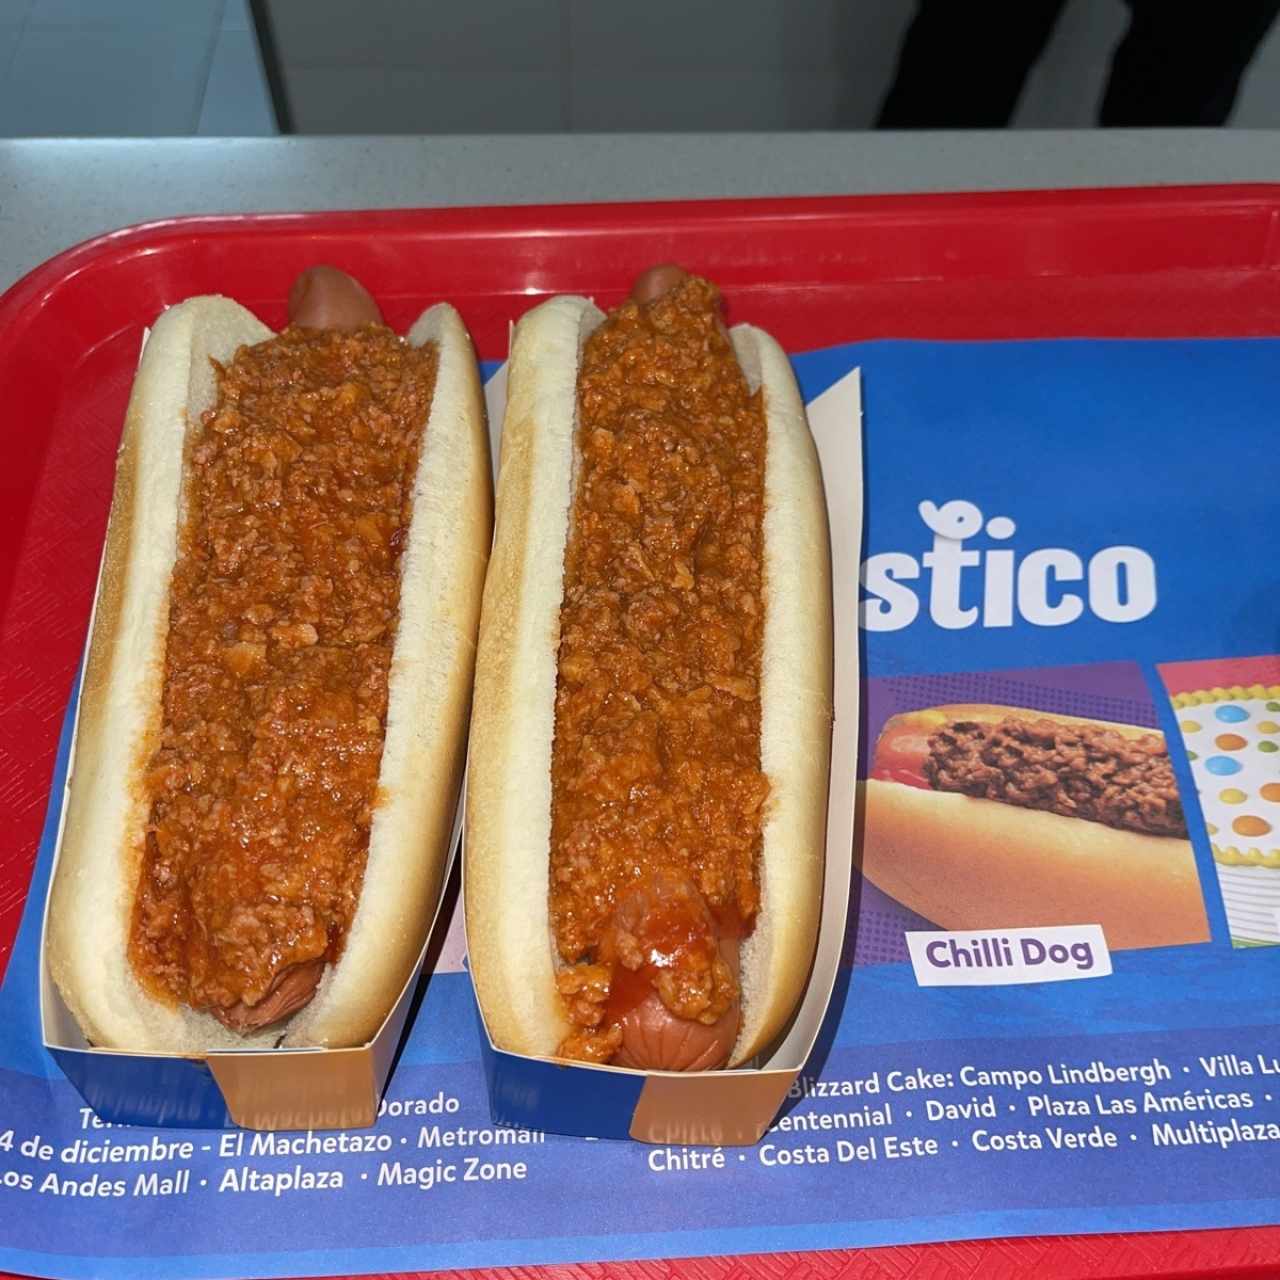 2 Chilli dog + 2 Nachos chili y queso + 1 Litro de Blizzard Oreo + 4 DQ Sandwich